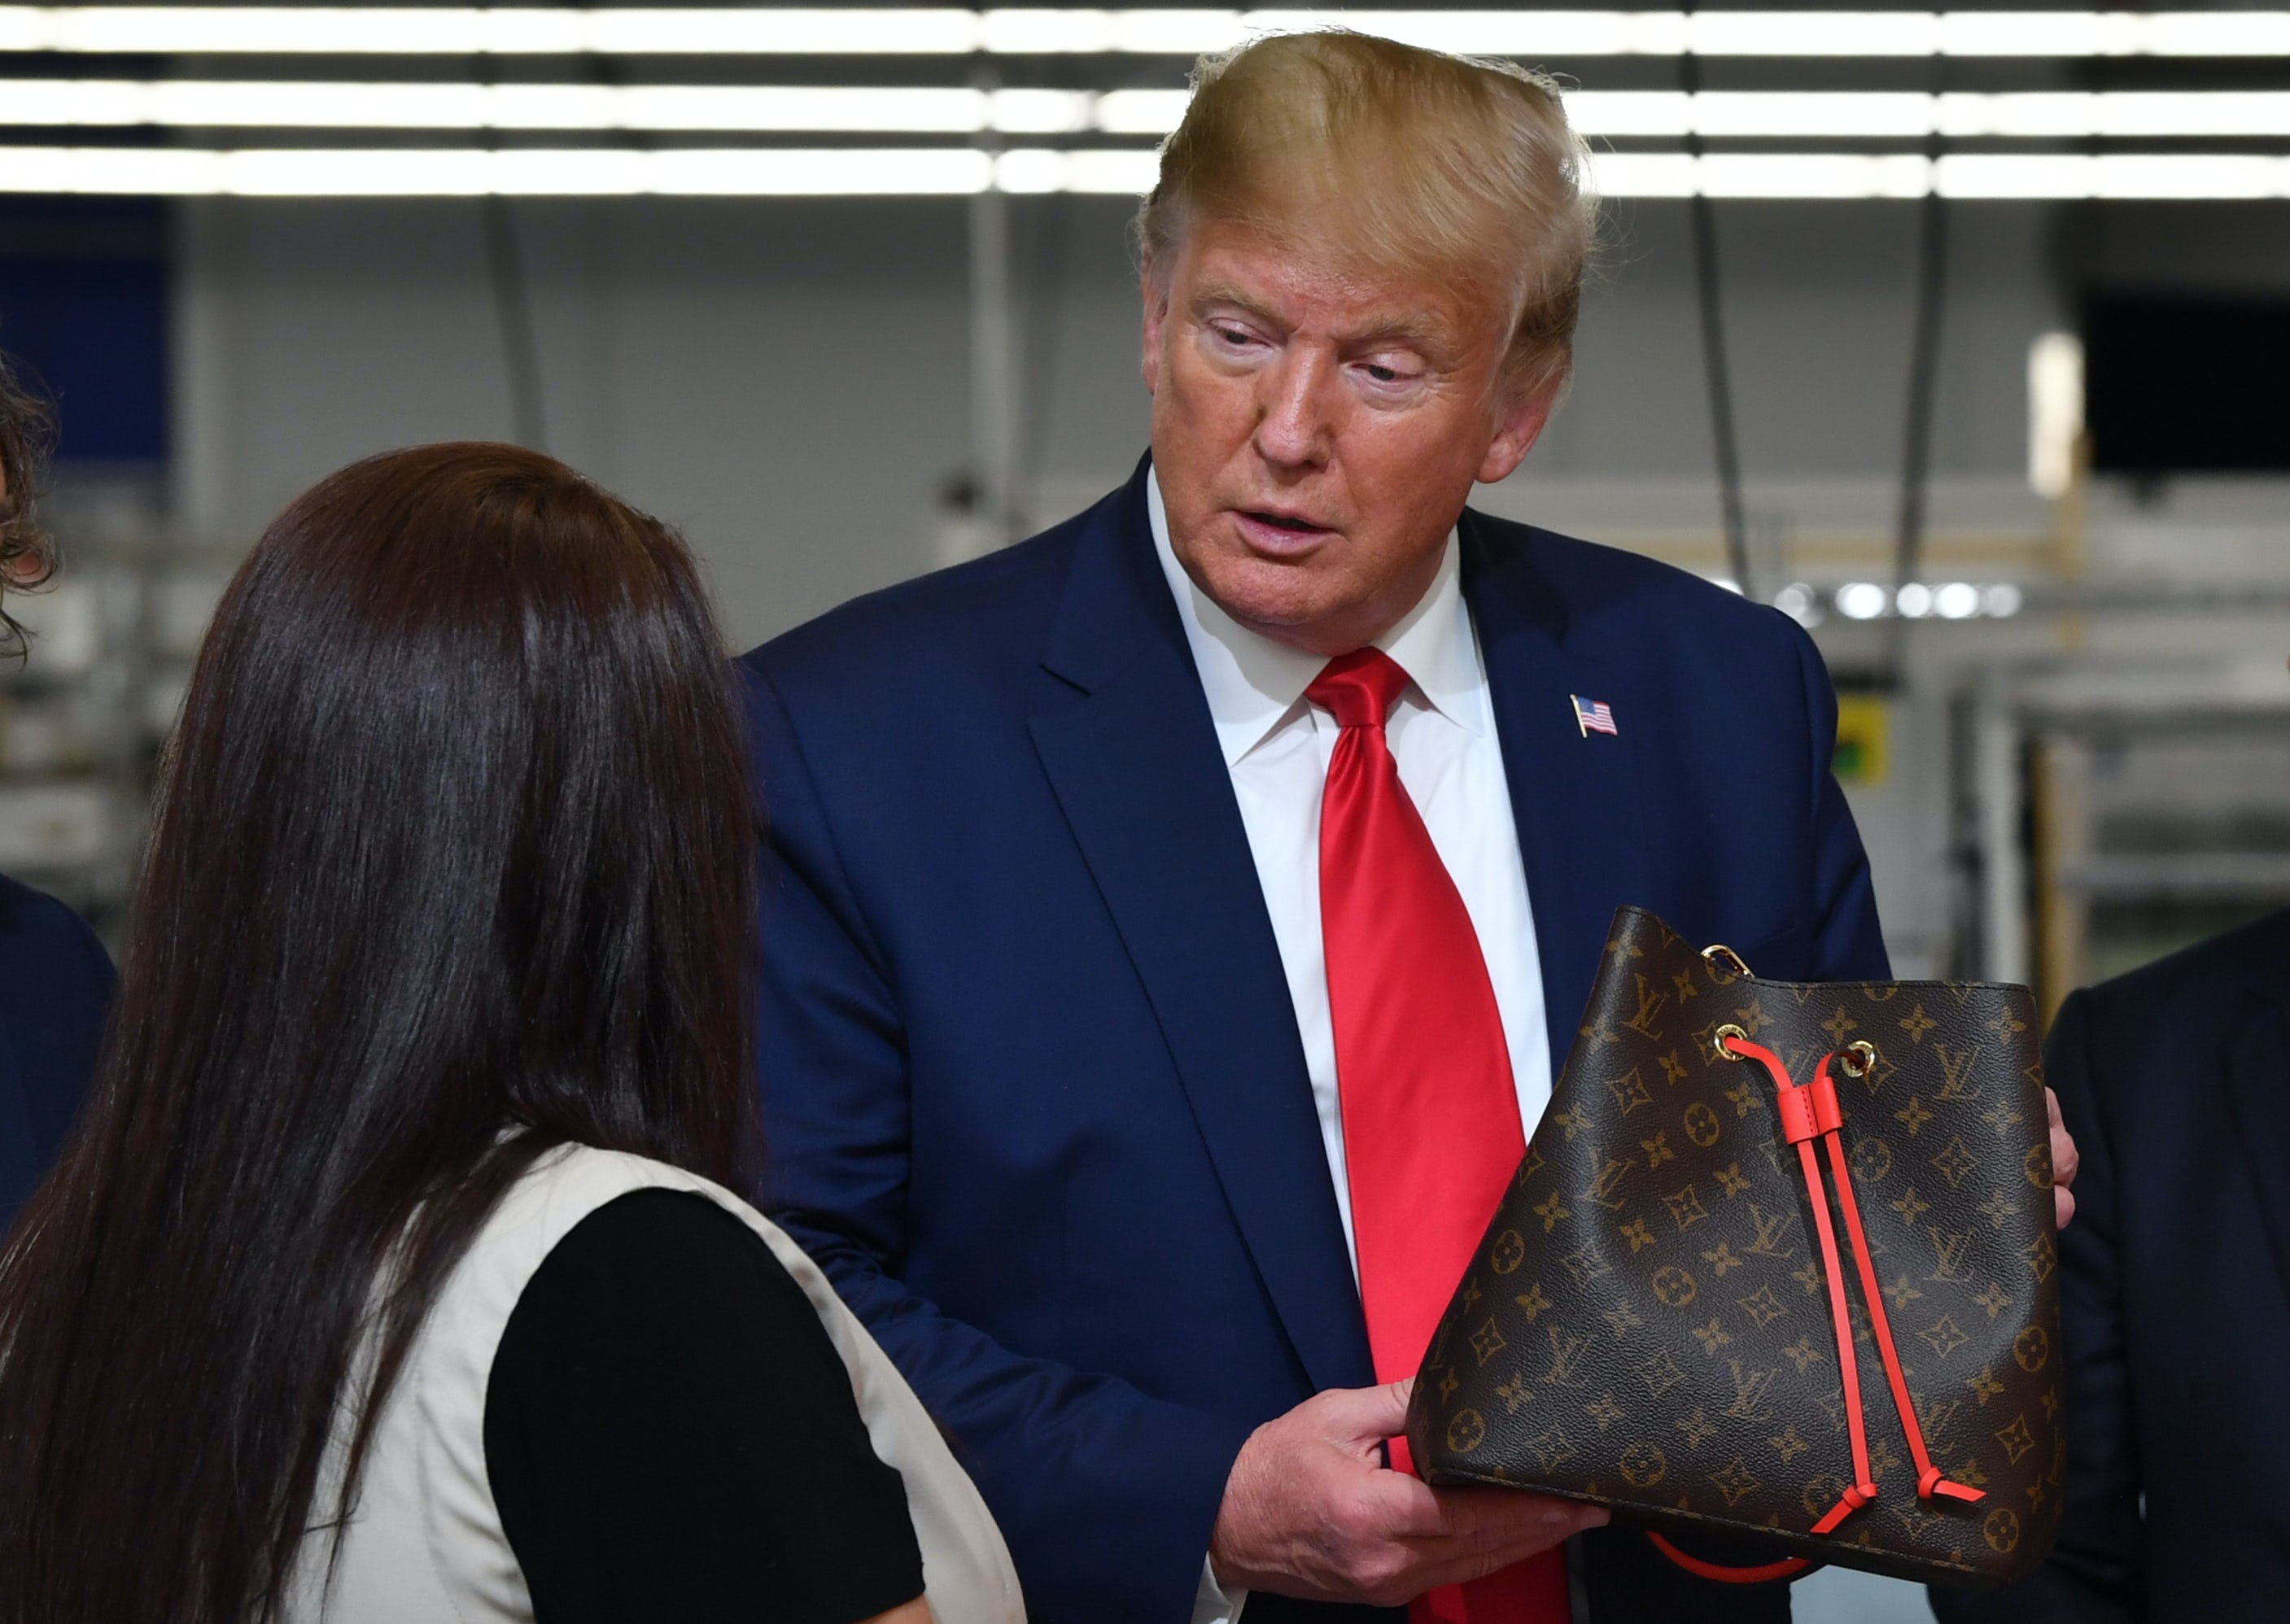 Louis Vuitton Faces Boycott Threat After Trump Visits Factory